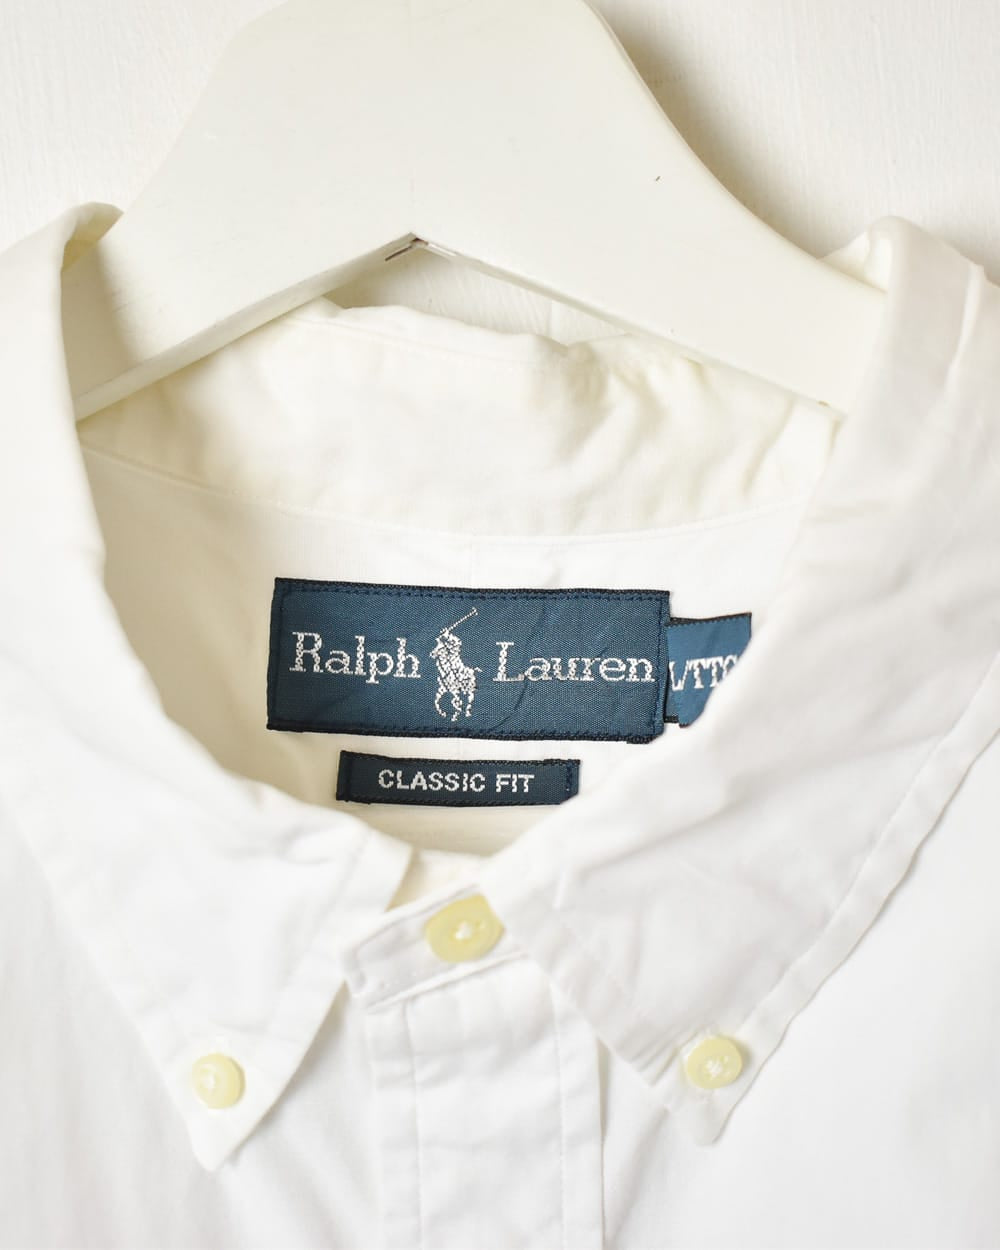 White Polo Ralph Lauren Short Sleeved Shirt - XX-Large